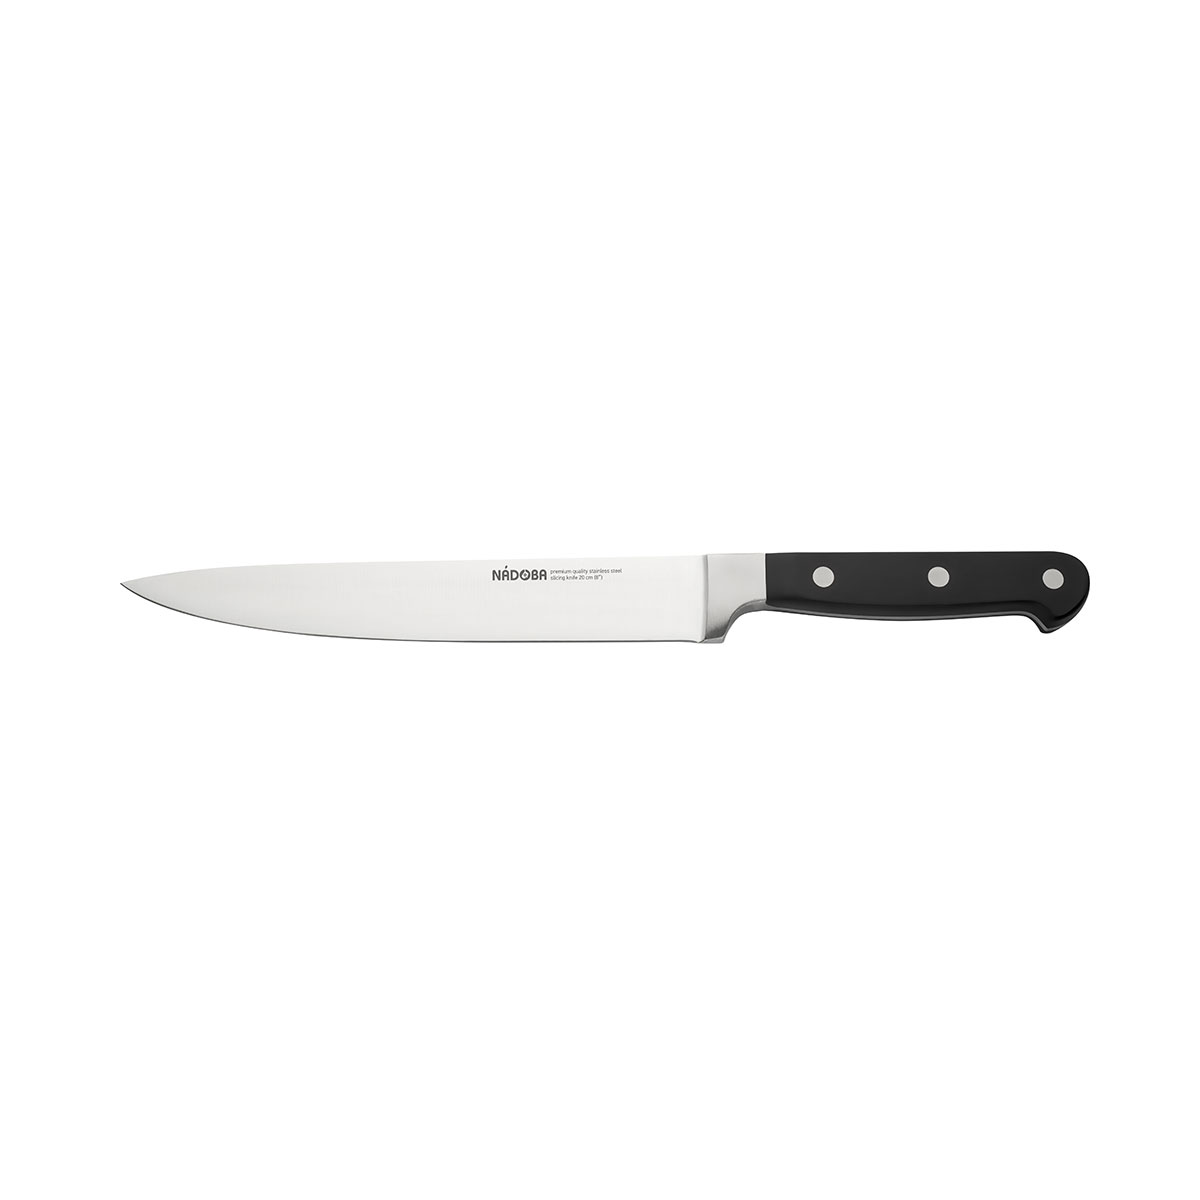 Нож Nadoba разделочный 724212, 20 см нож разделочный nadoba horta 20 см